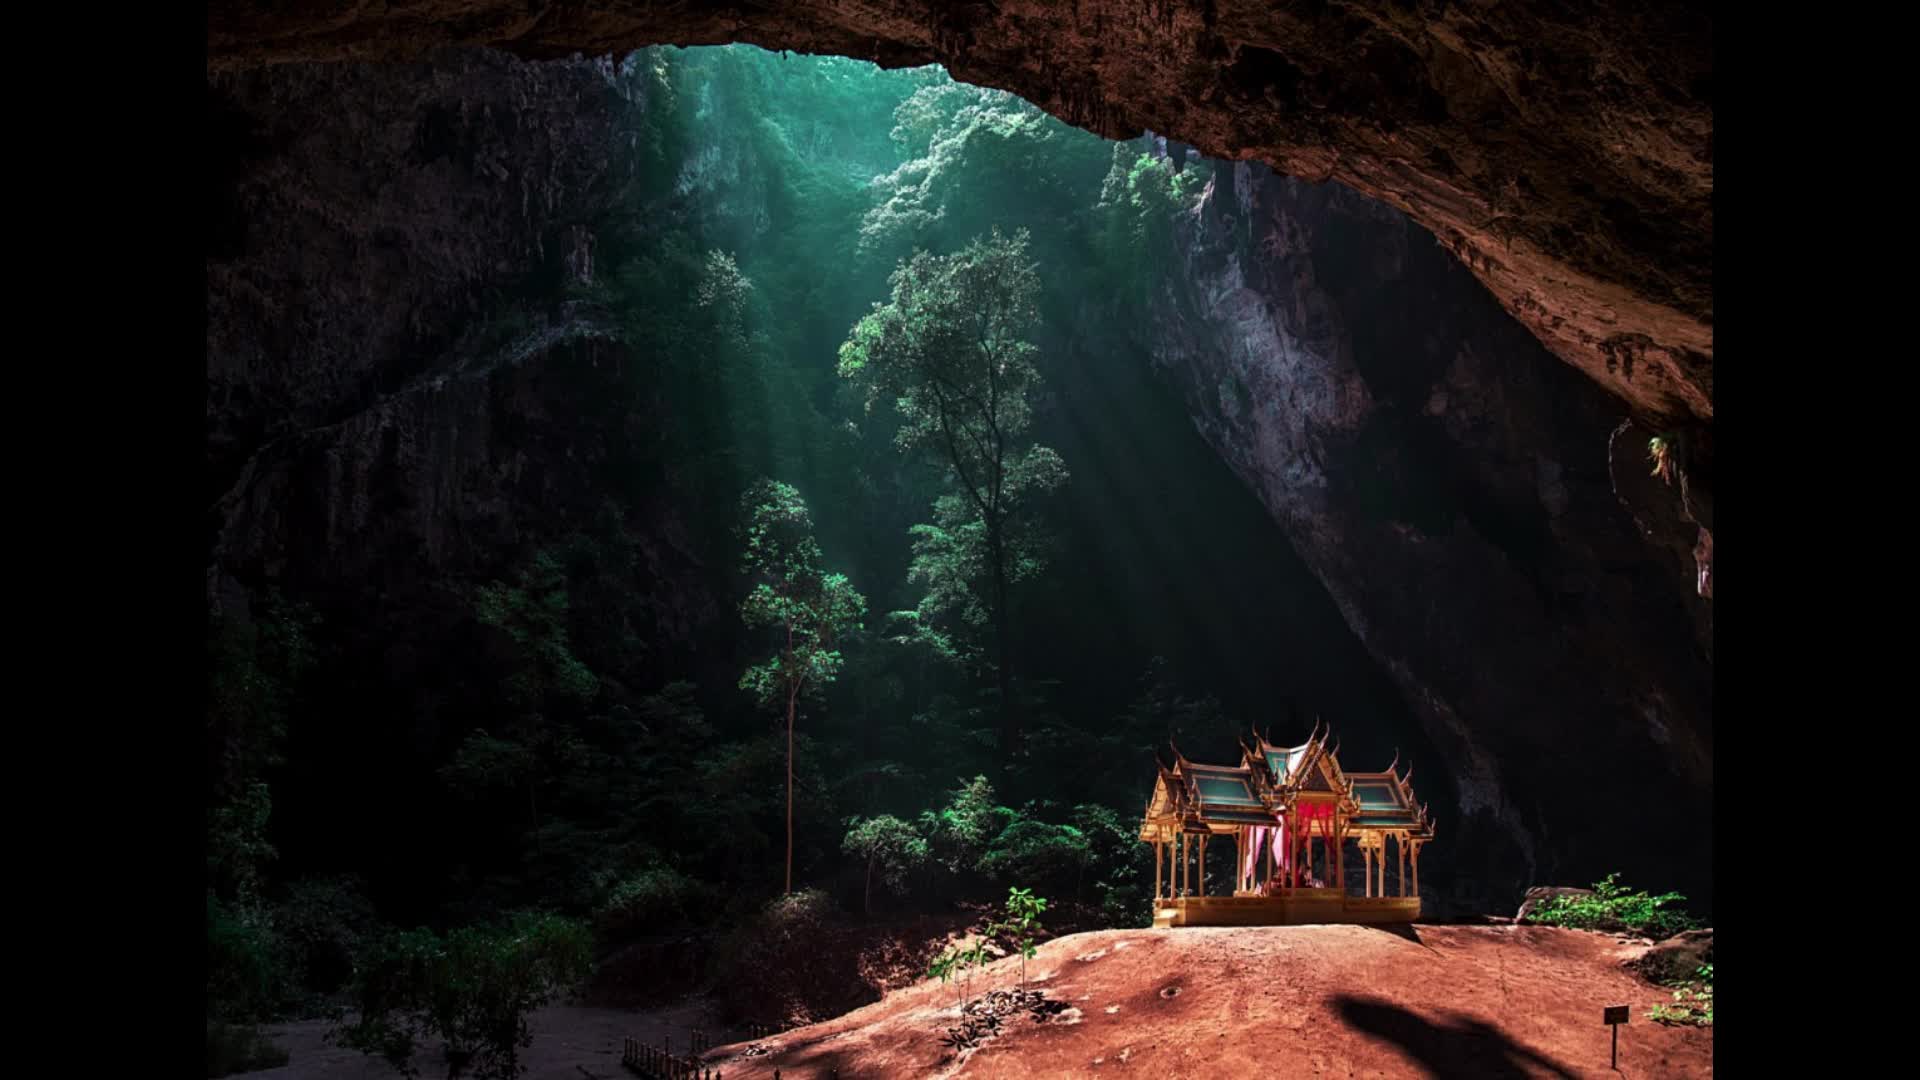 Содержание невероятный. Пещера Прайя Накхон Таиланд. Таиланд. Пещера Phraya Nakorn. Прая након (Phraya Nakhon), Таиланд. Сяочжай Тянькэн.